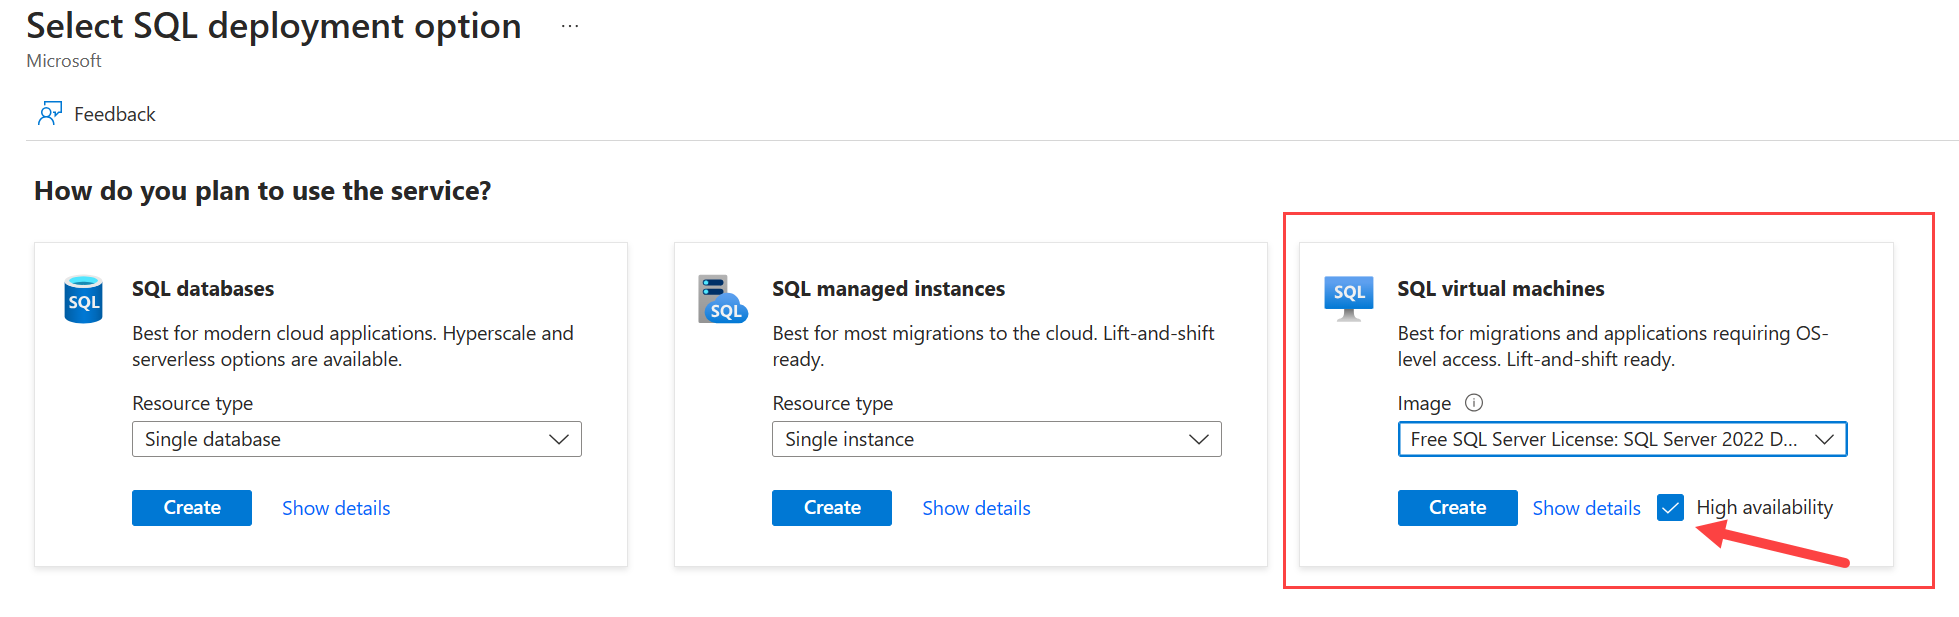 Snímek obrazovky webu Azure Portal zobrazující stránku pro výběr možnosti nasazení SQL Serveru s vybranou vysokou dostupností 